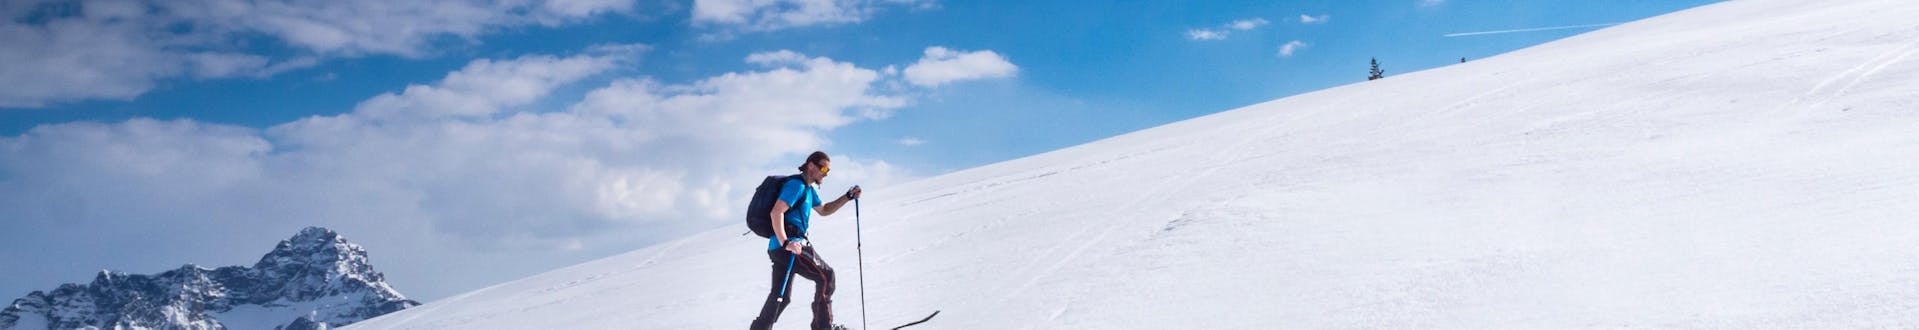 Scialpinista che risale la pista di Riezlern, in Austria, in una giornata di sole.